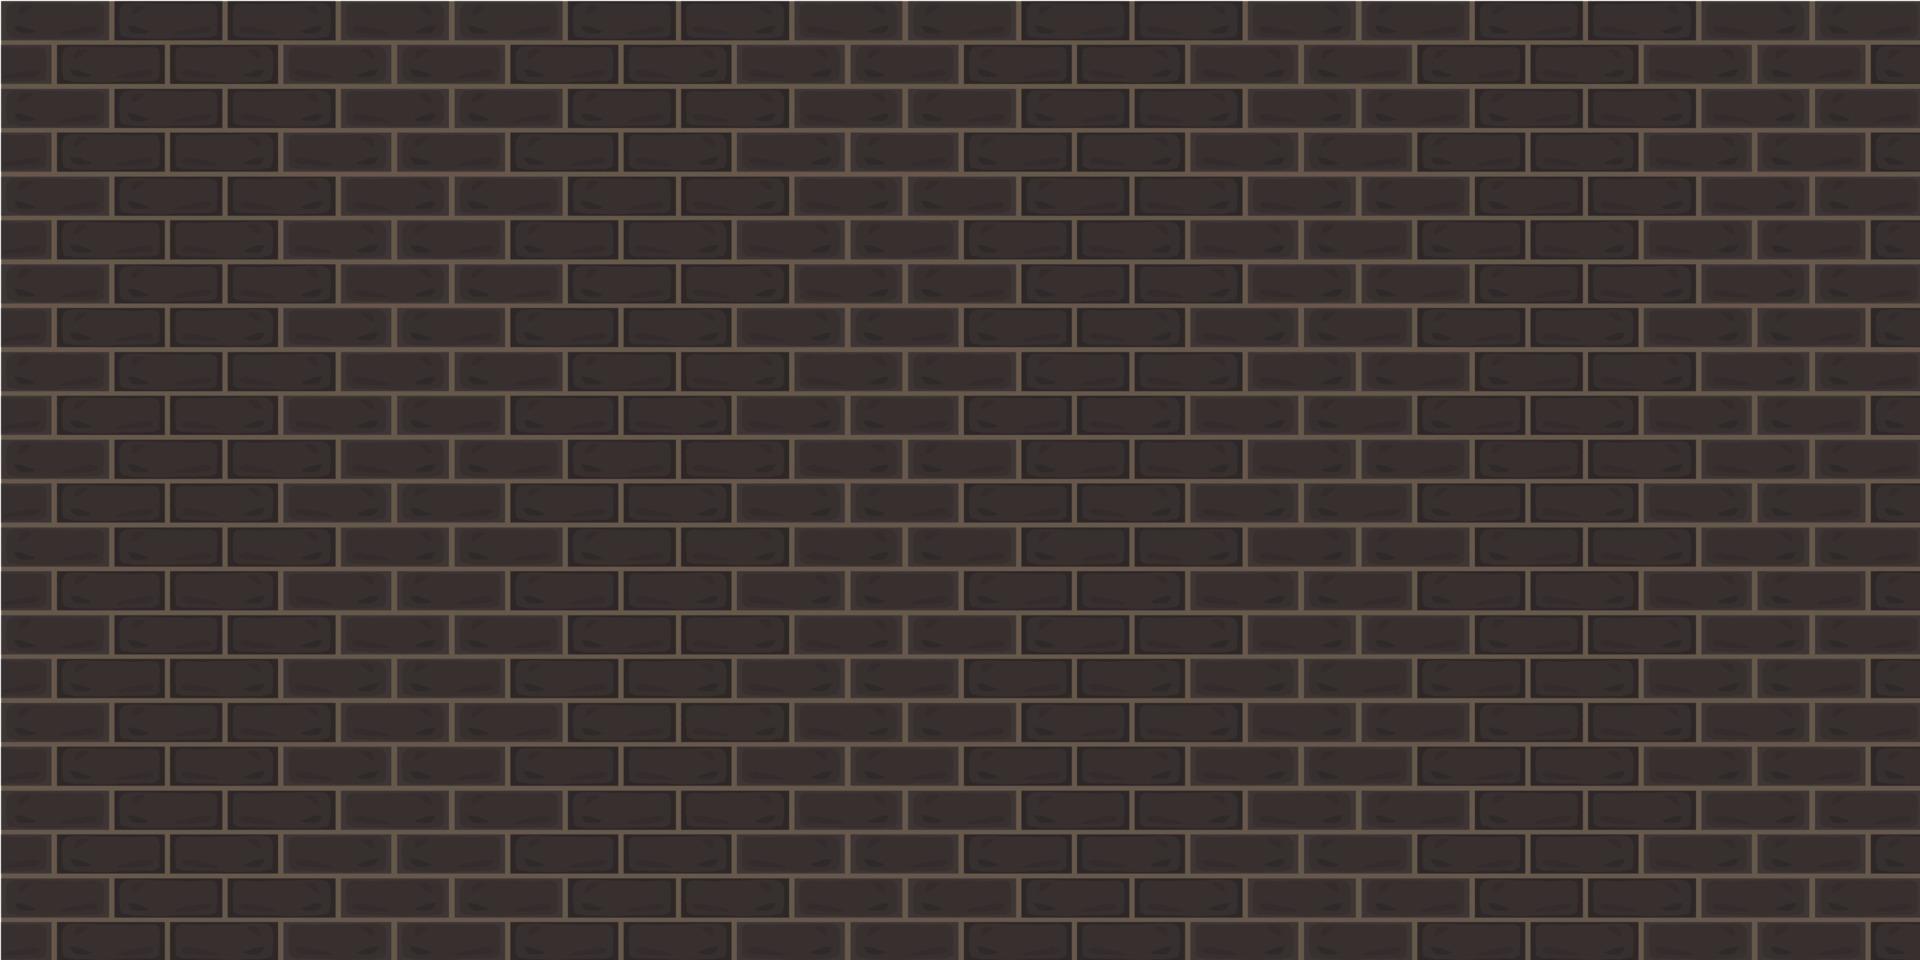 mur de briques colorées marron bâtiment béton fond abstrait texture papier peint toile de fond modèle illustration vectorielle continue vecteur